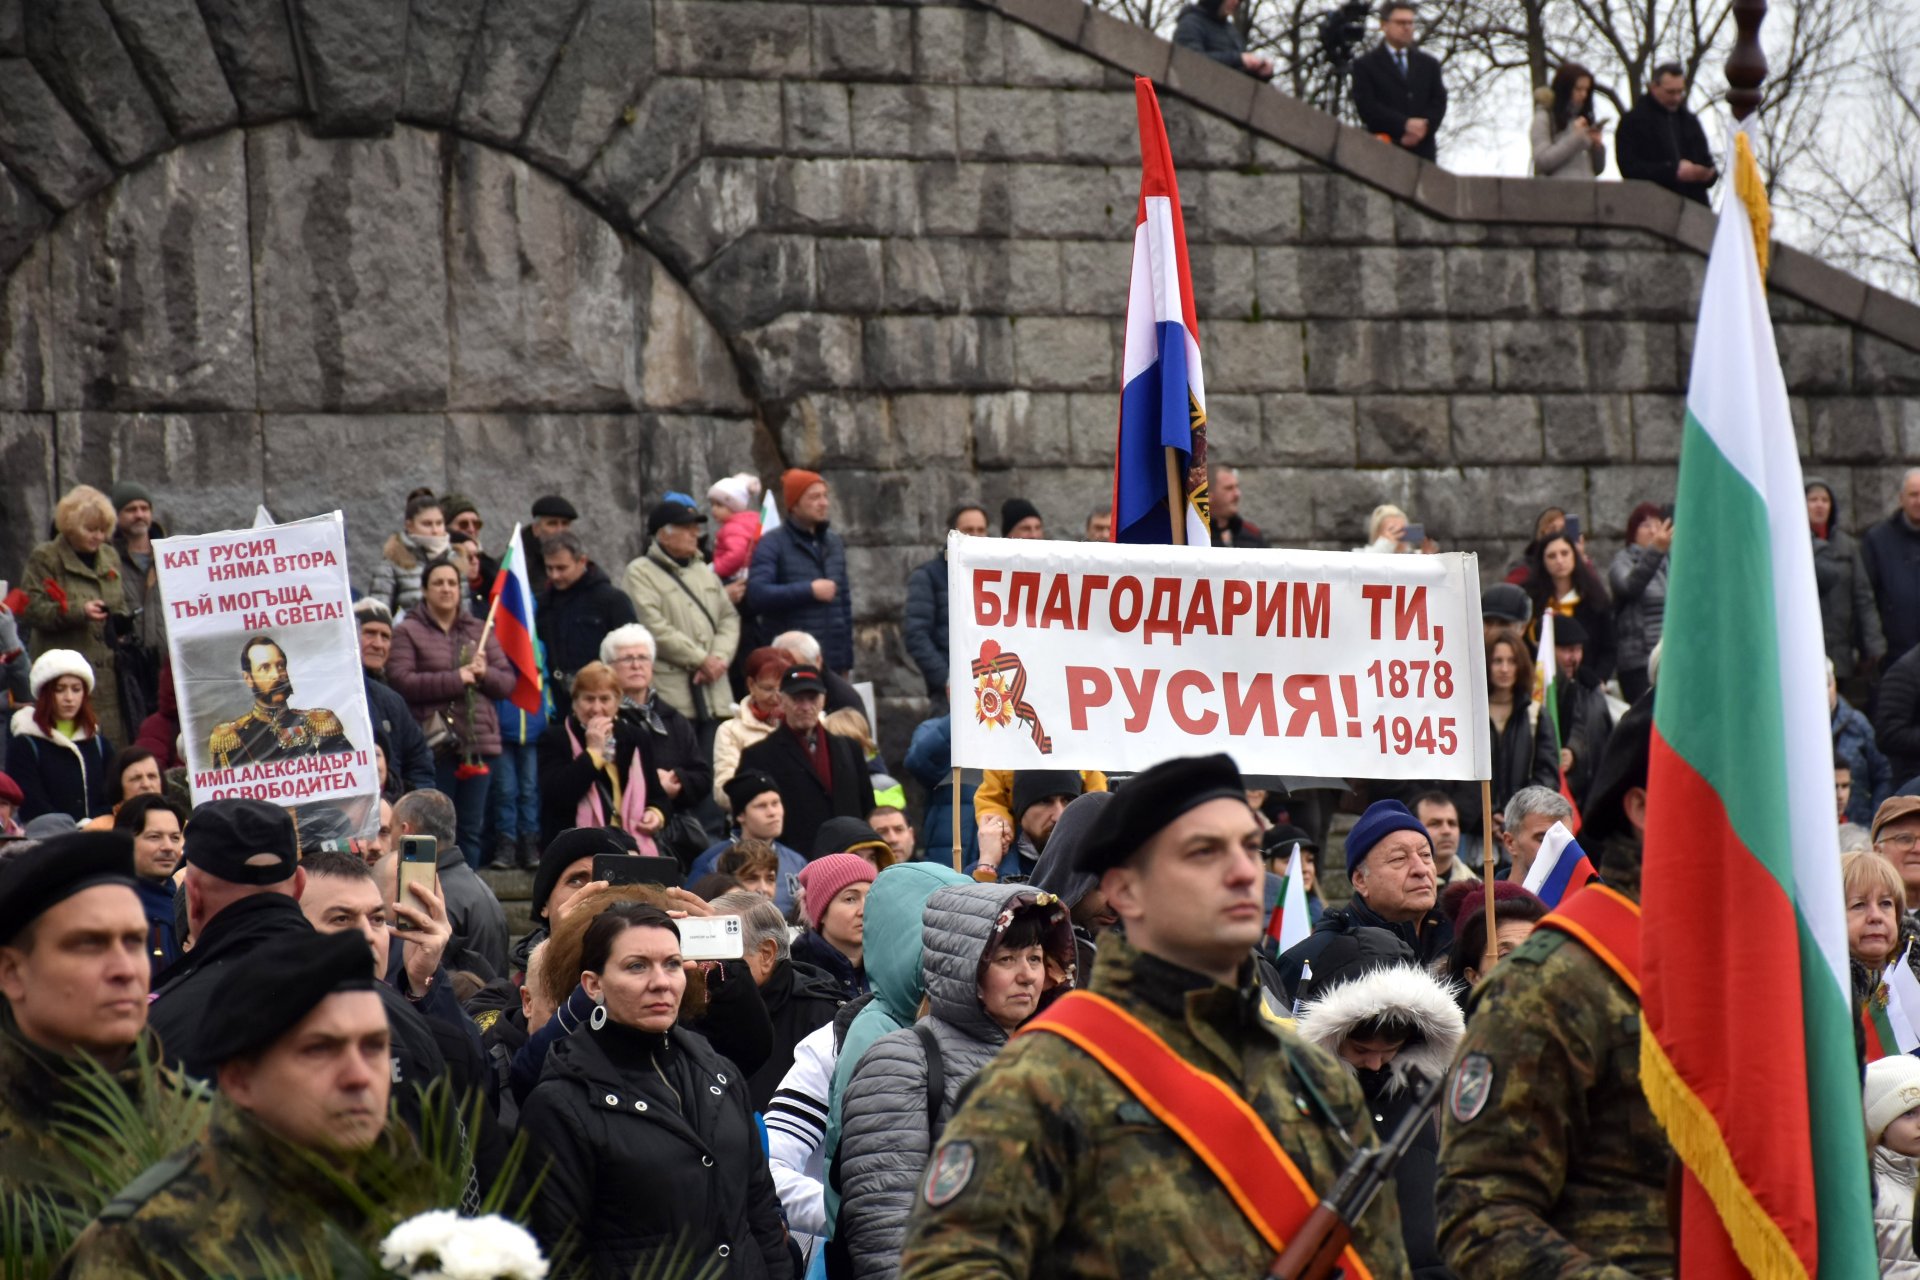 Пловдивчани отбелязаха 3 март с плакати с надпис: "Благодарим ти Русия"